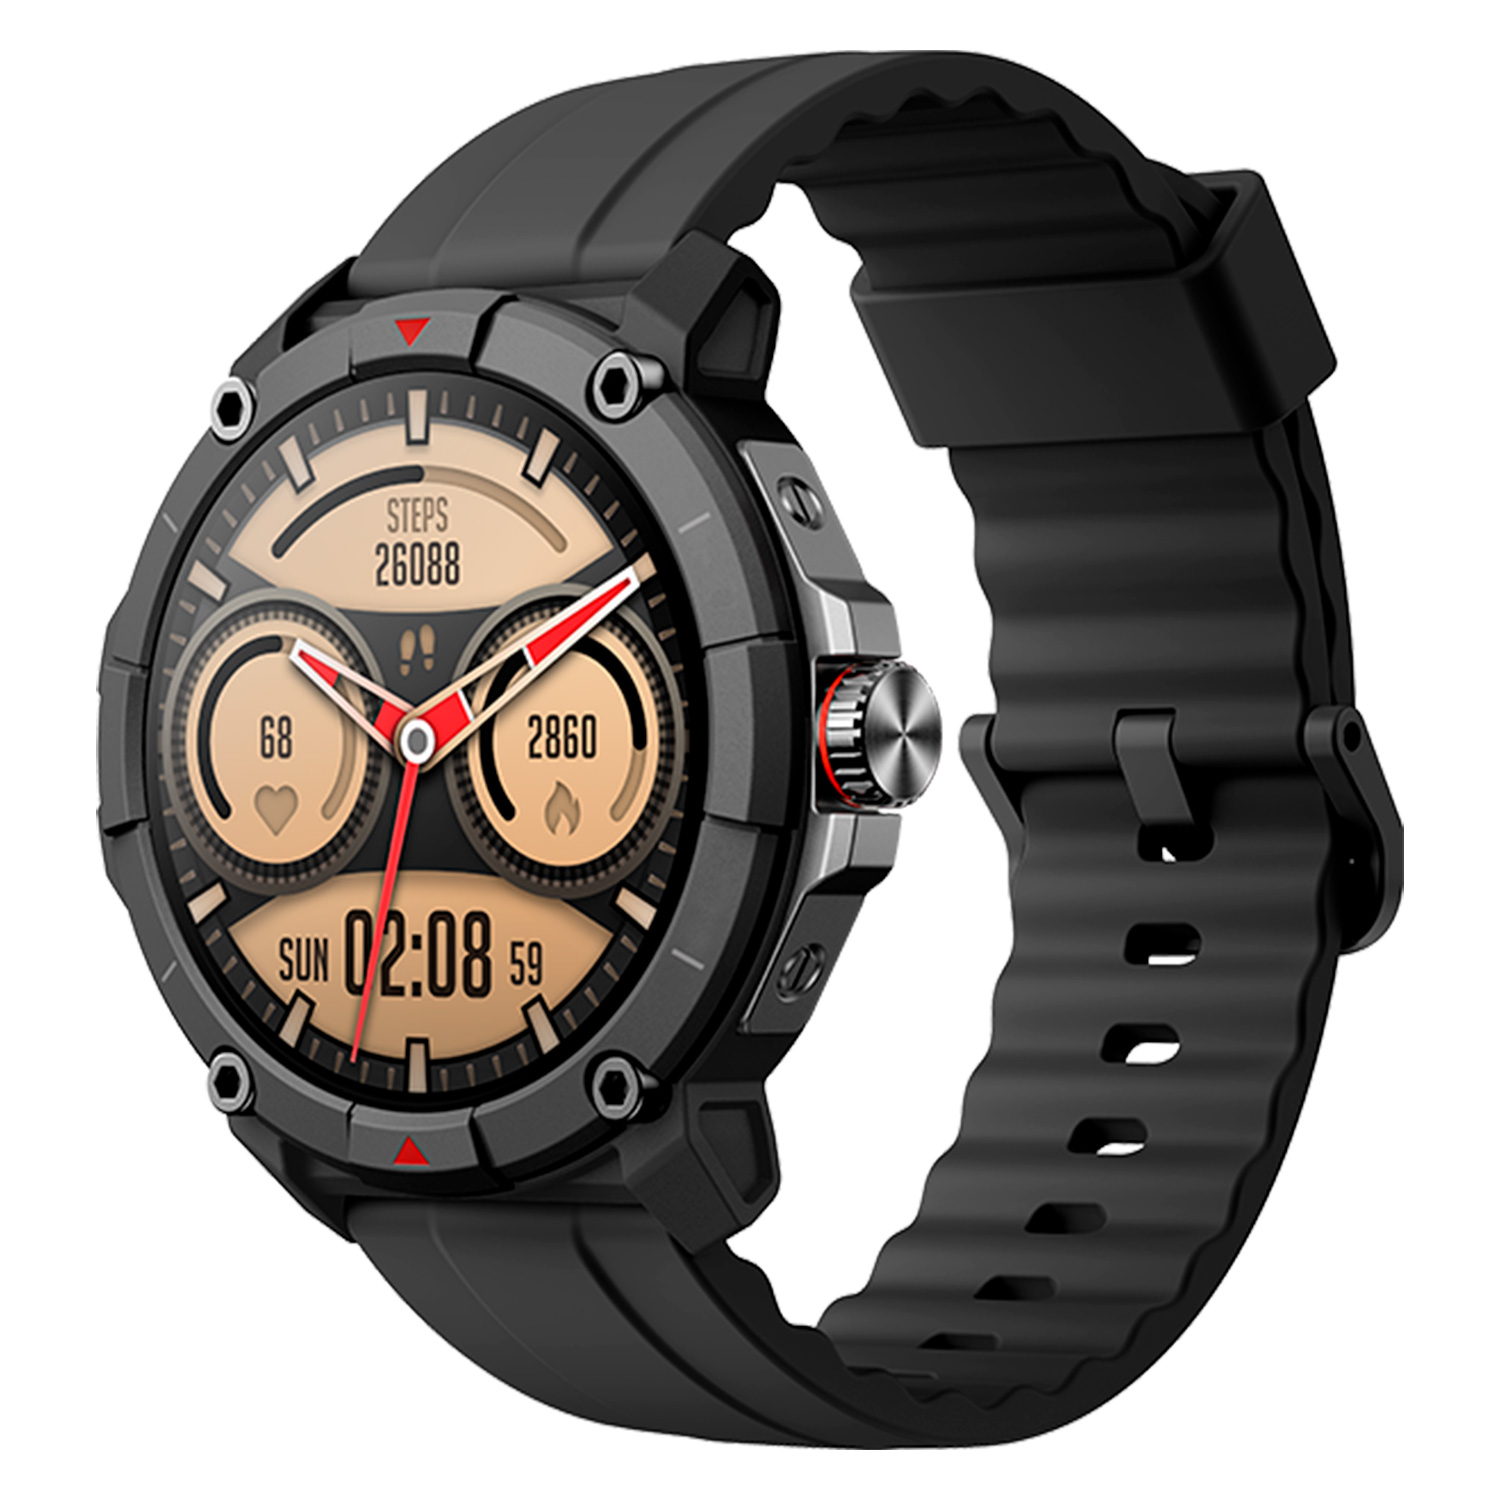 Smartwatch Udfine Watch GS Alexa - Preto